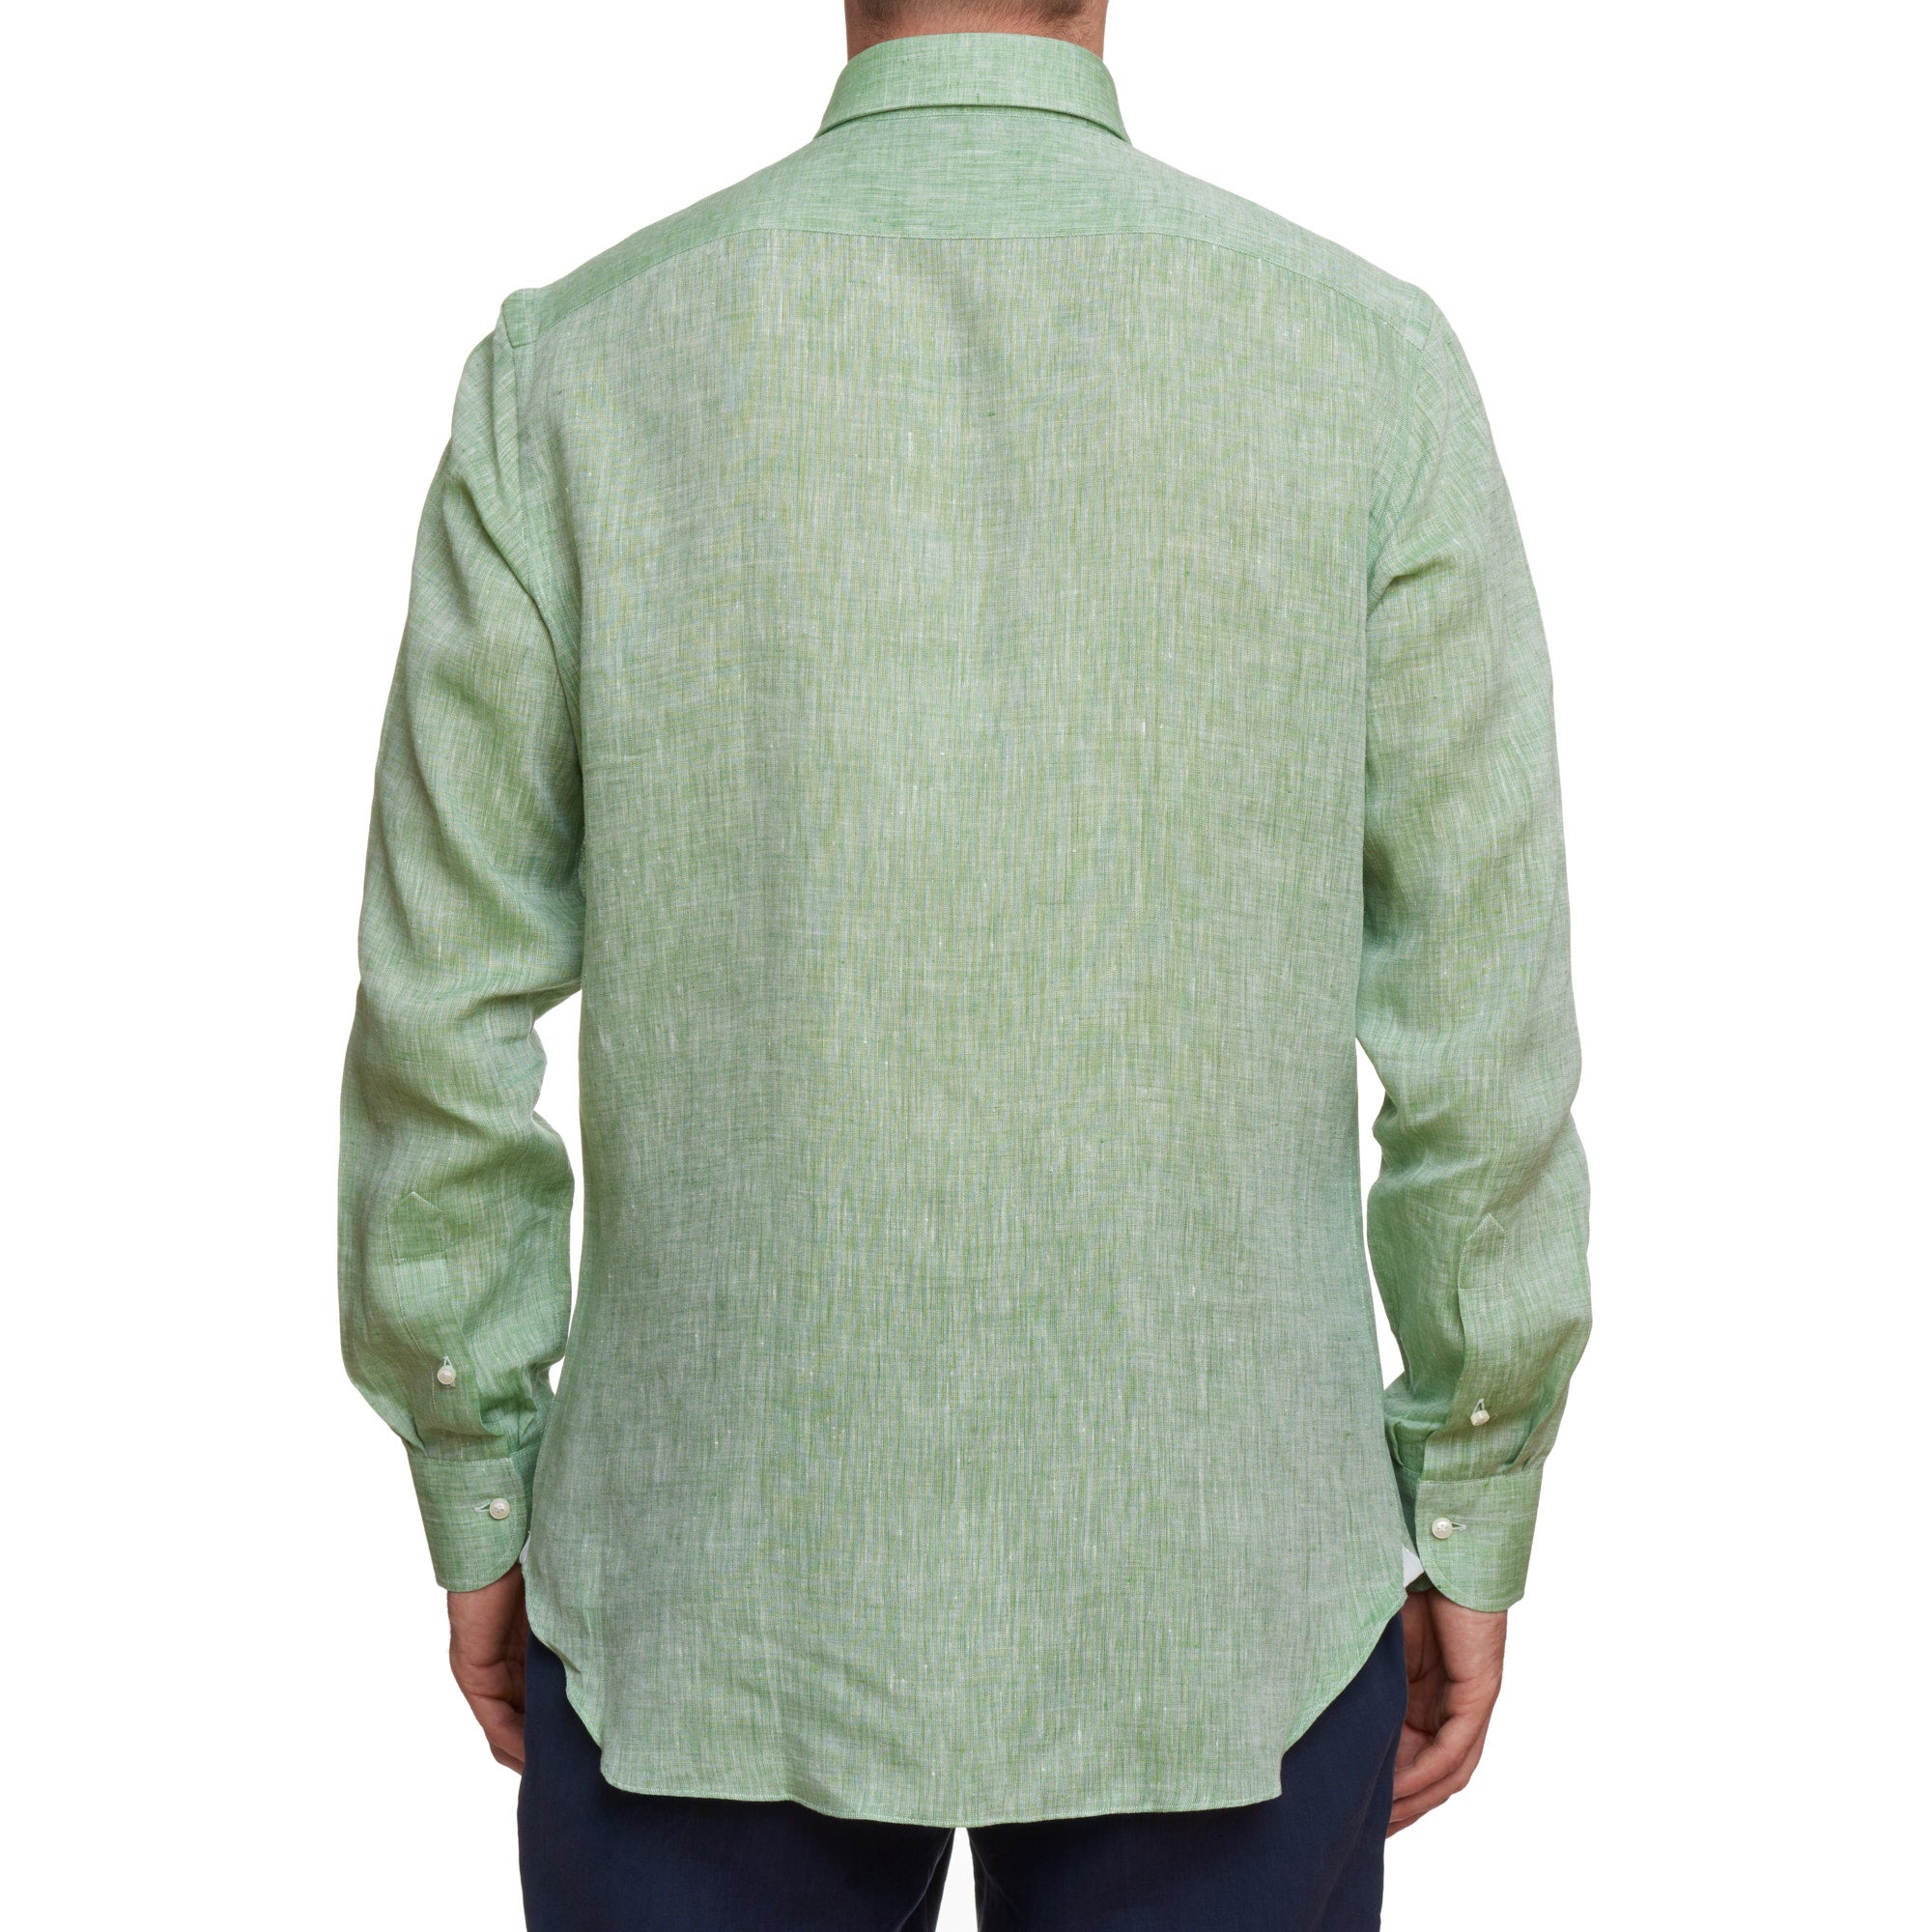 SARTORIO Napoli by KITON Green Linen Button-Down Casual Shirt NEW SARTORIO